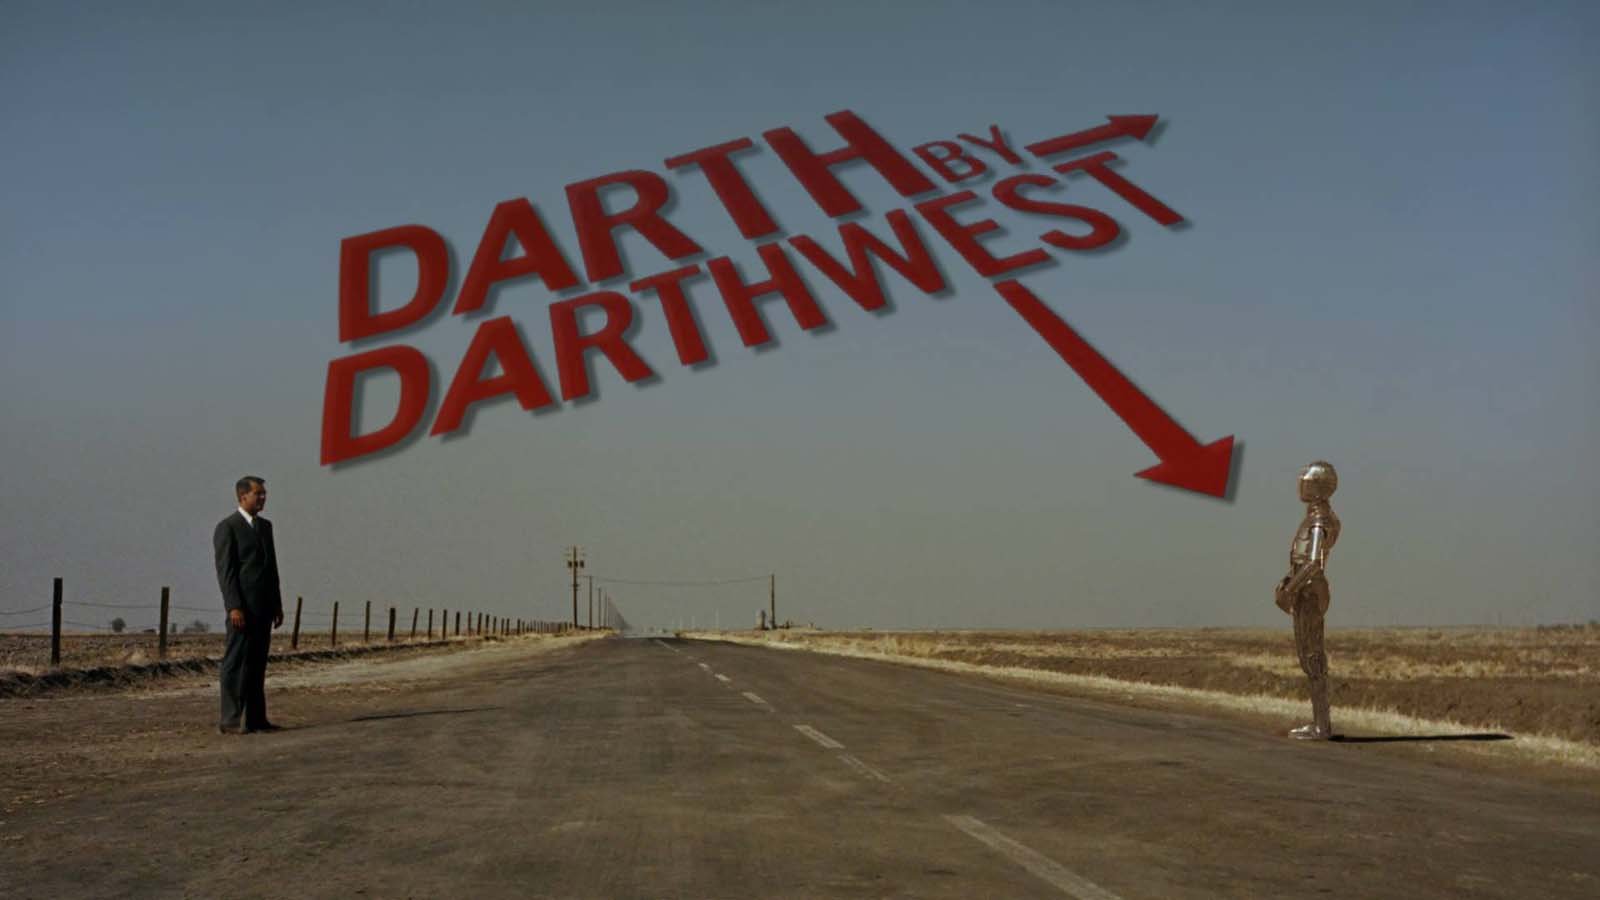 Darth by Darthwest : Photo